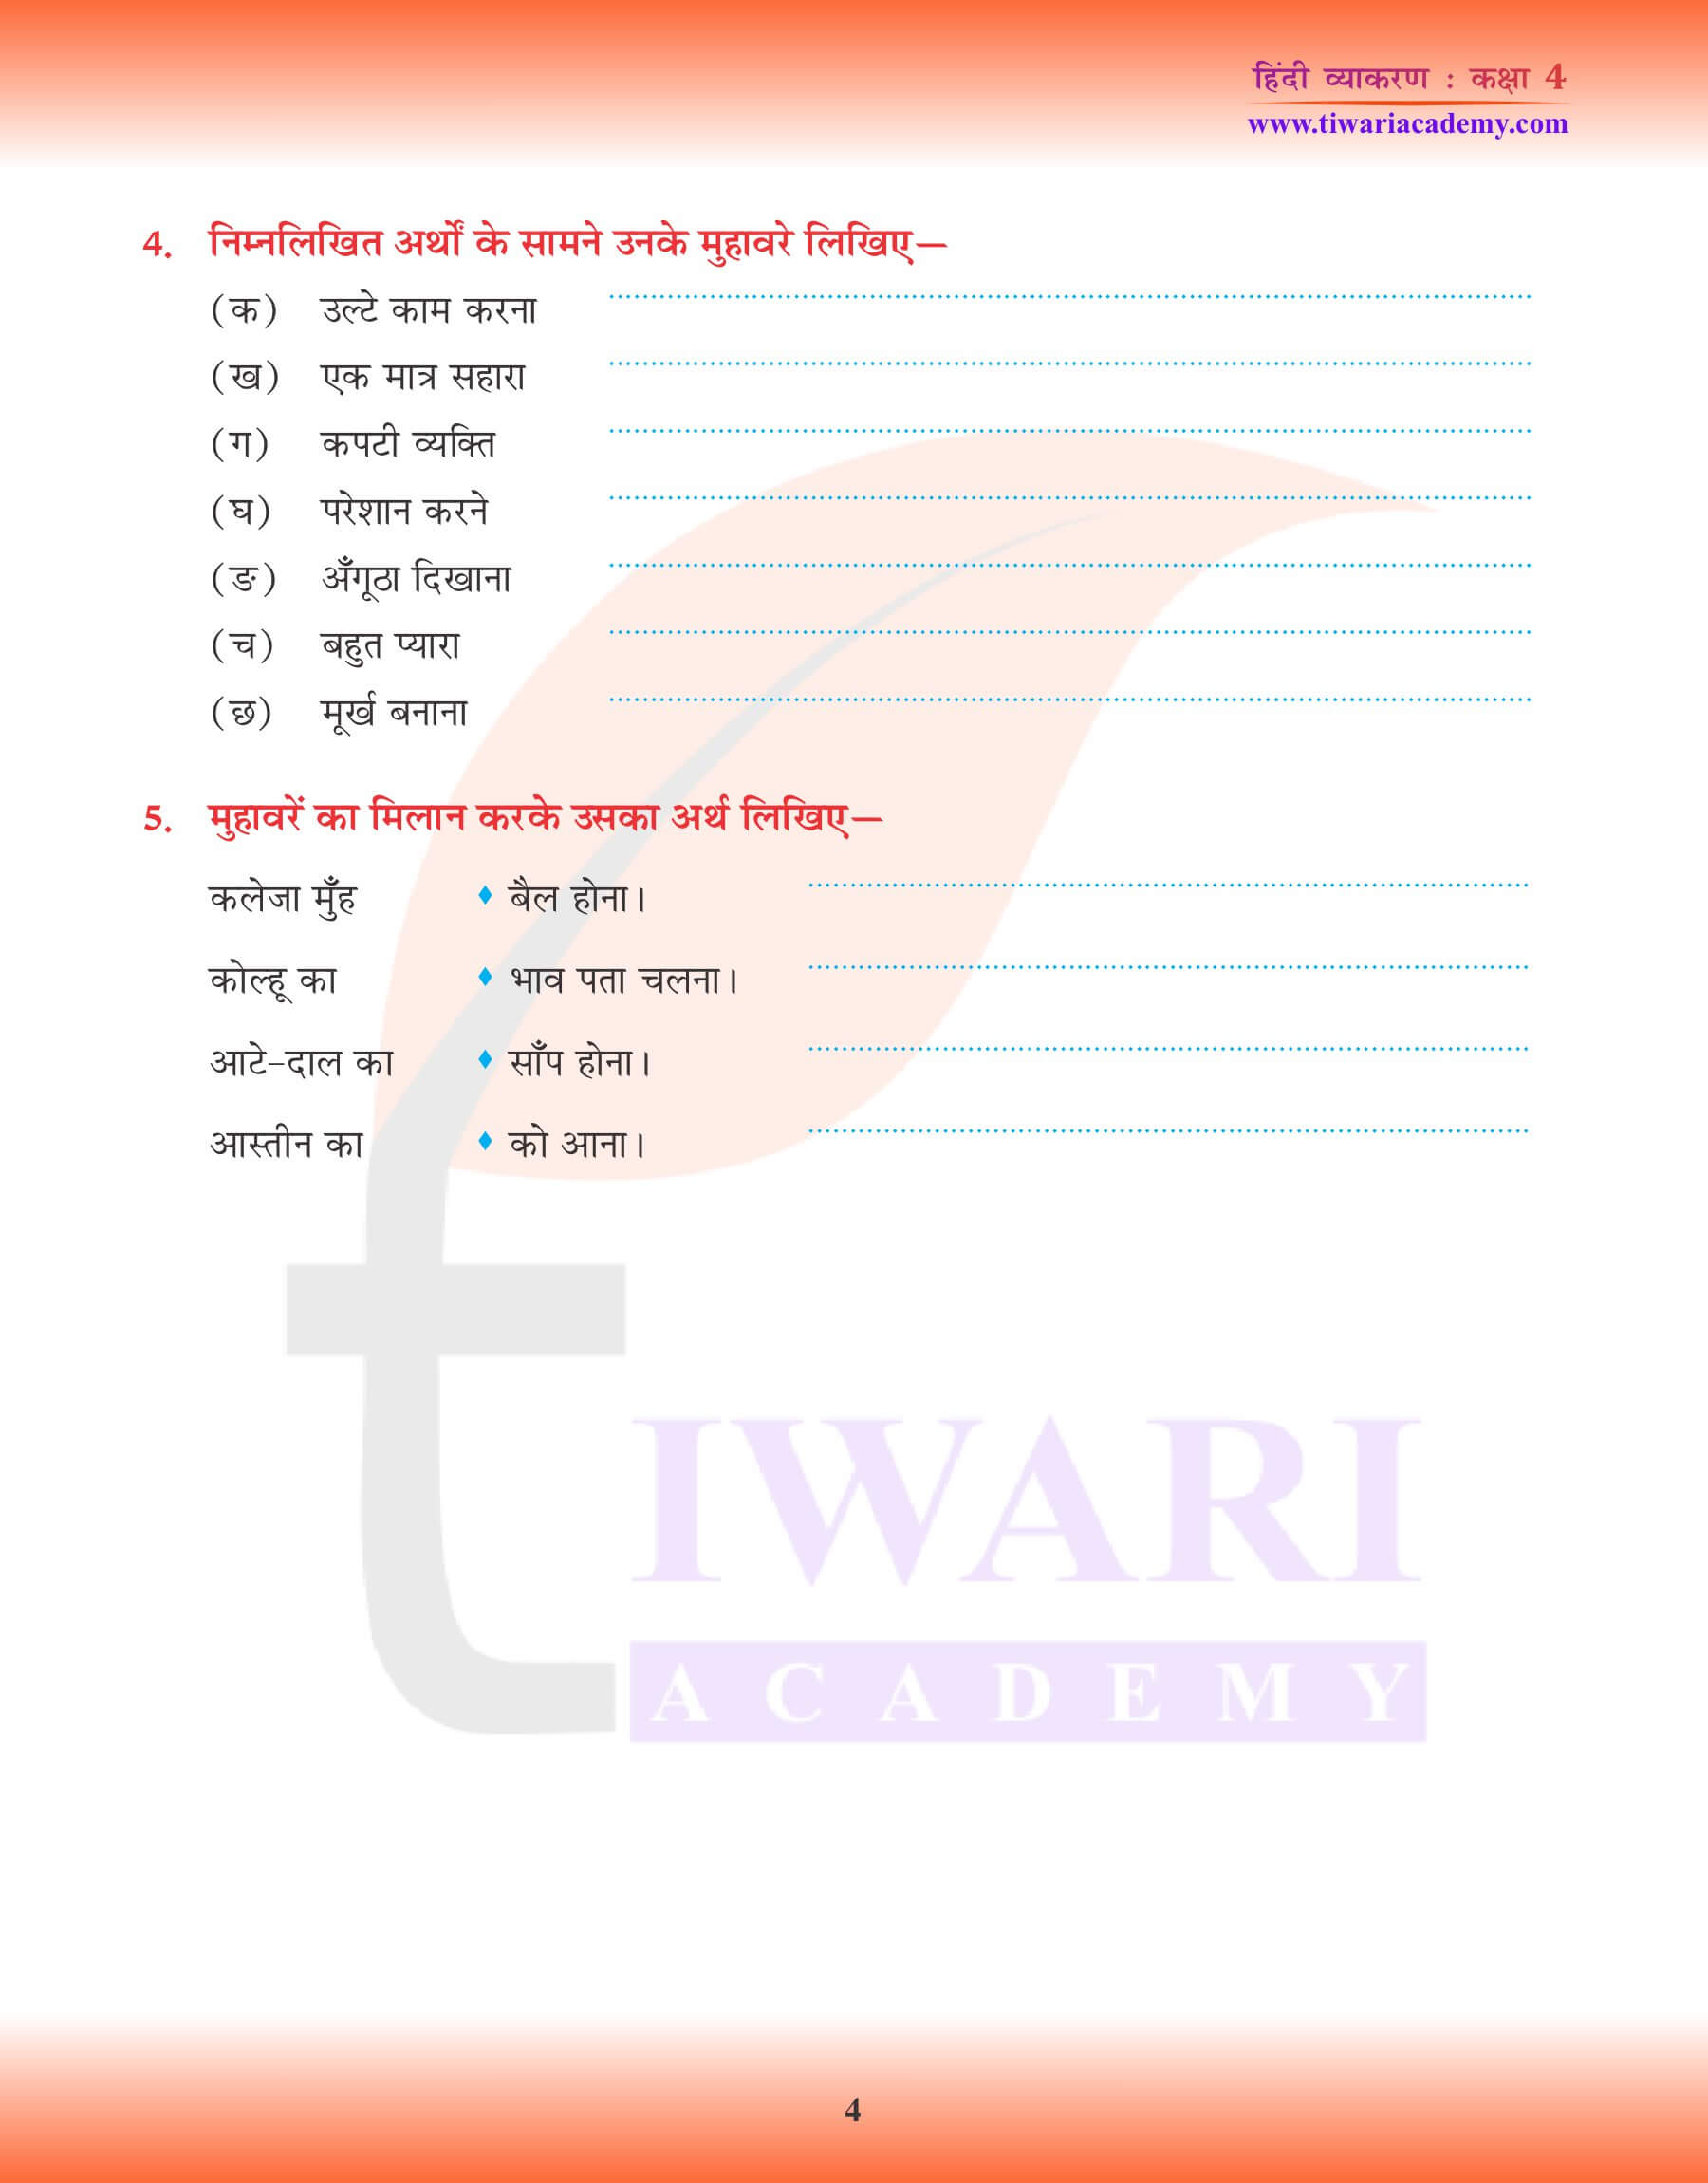 कक्षा 4 हिंदी व्याकरण में मुहावरे के प्रयोग